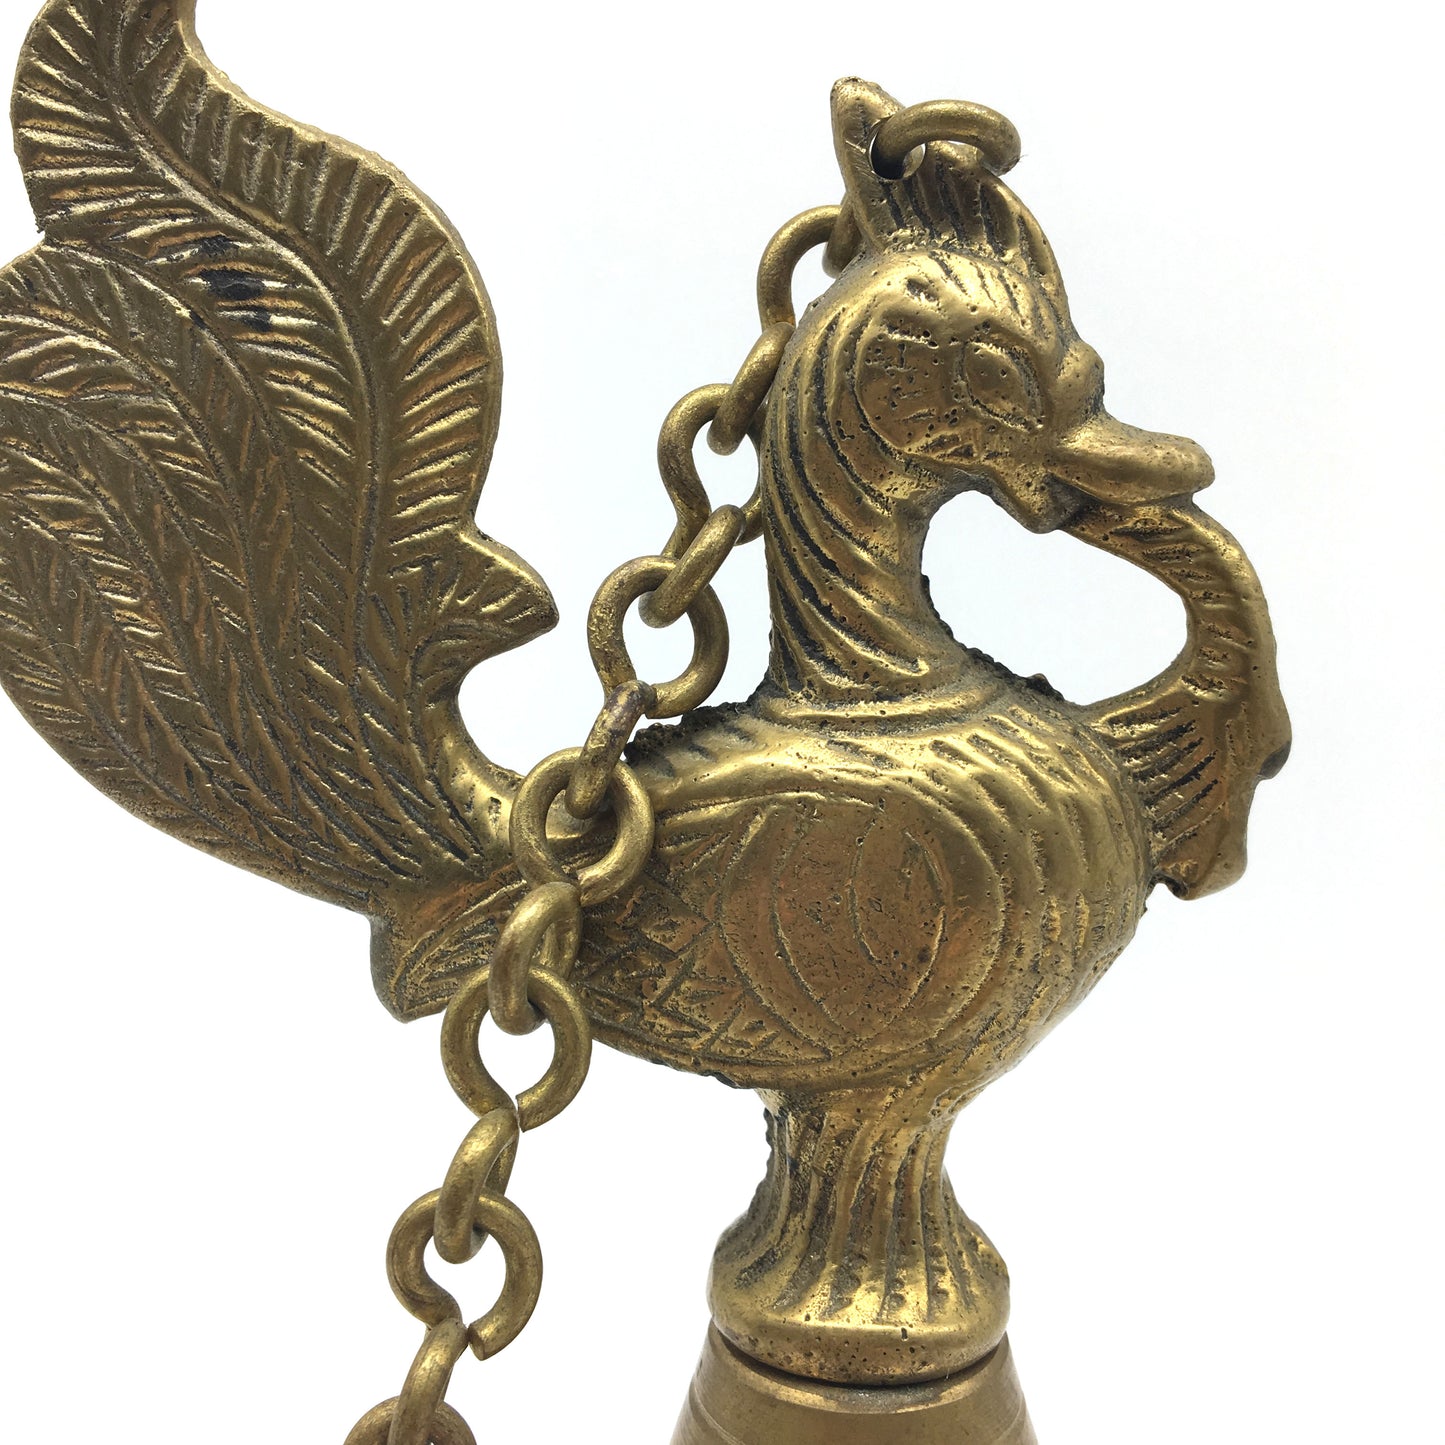 Vintage Brass Diya Aarti Deepak Lamp Puja Offering Handcrafted -Peacock Design